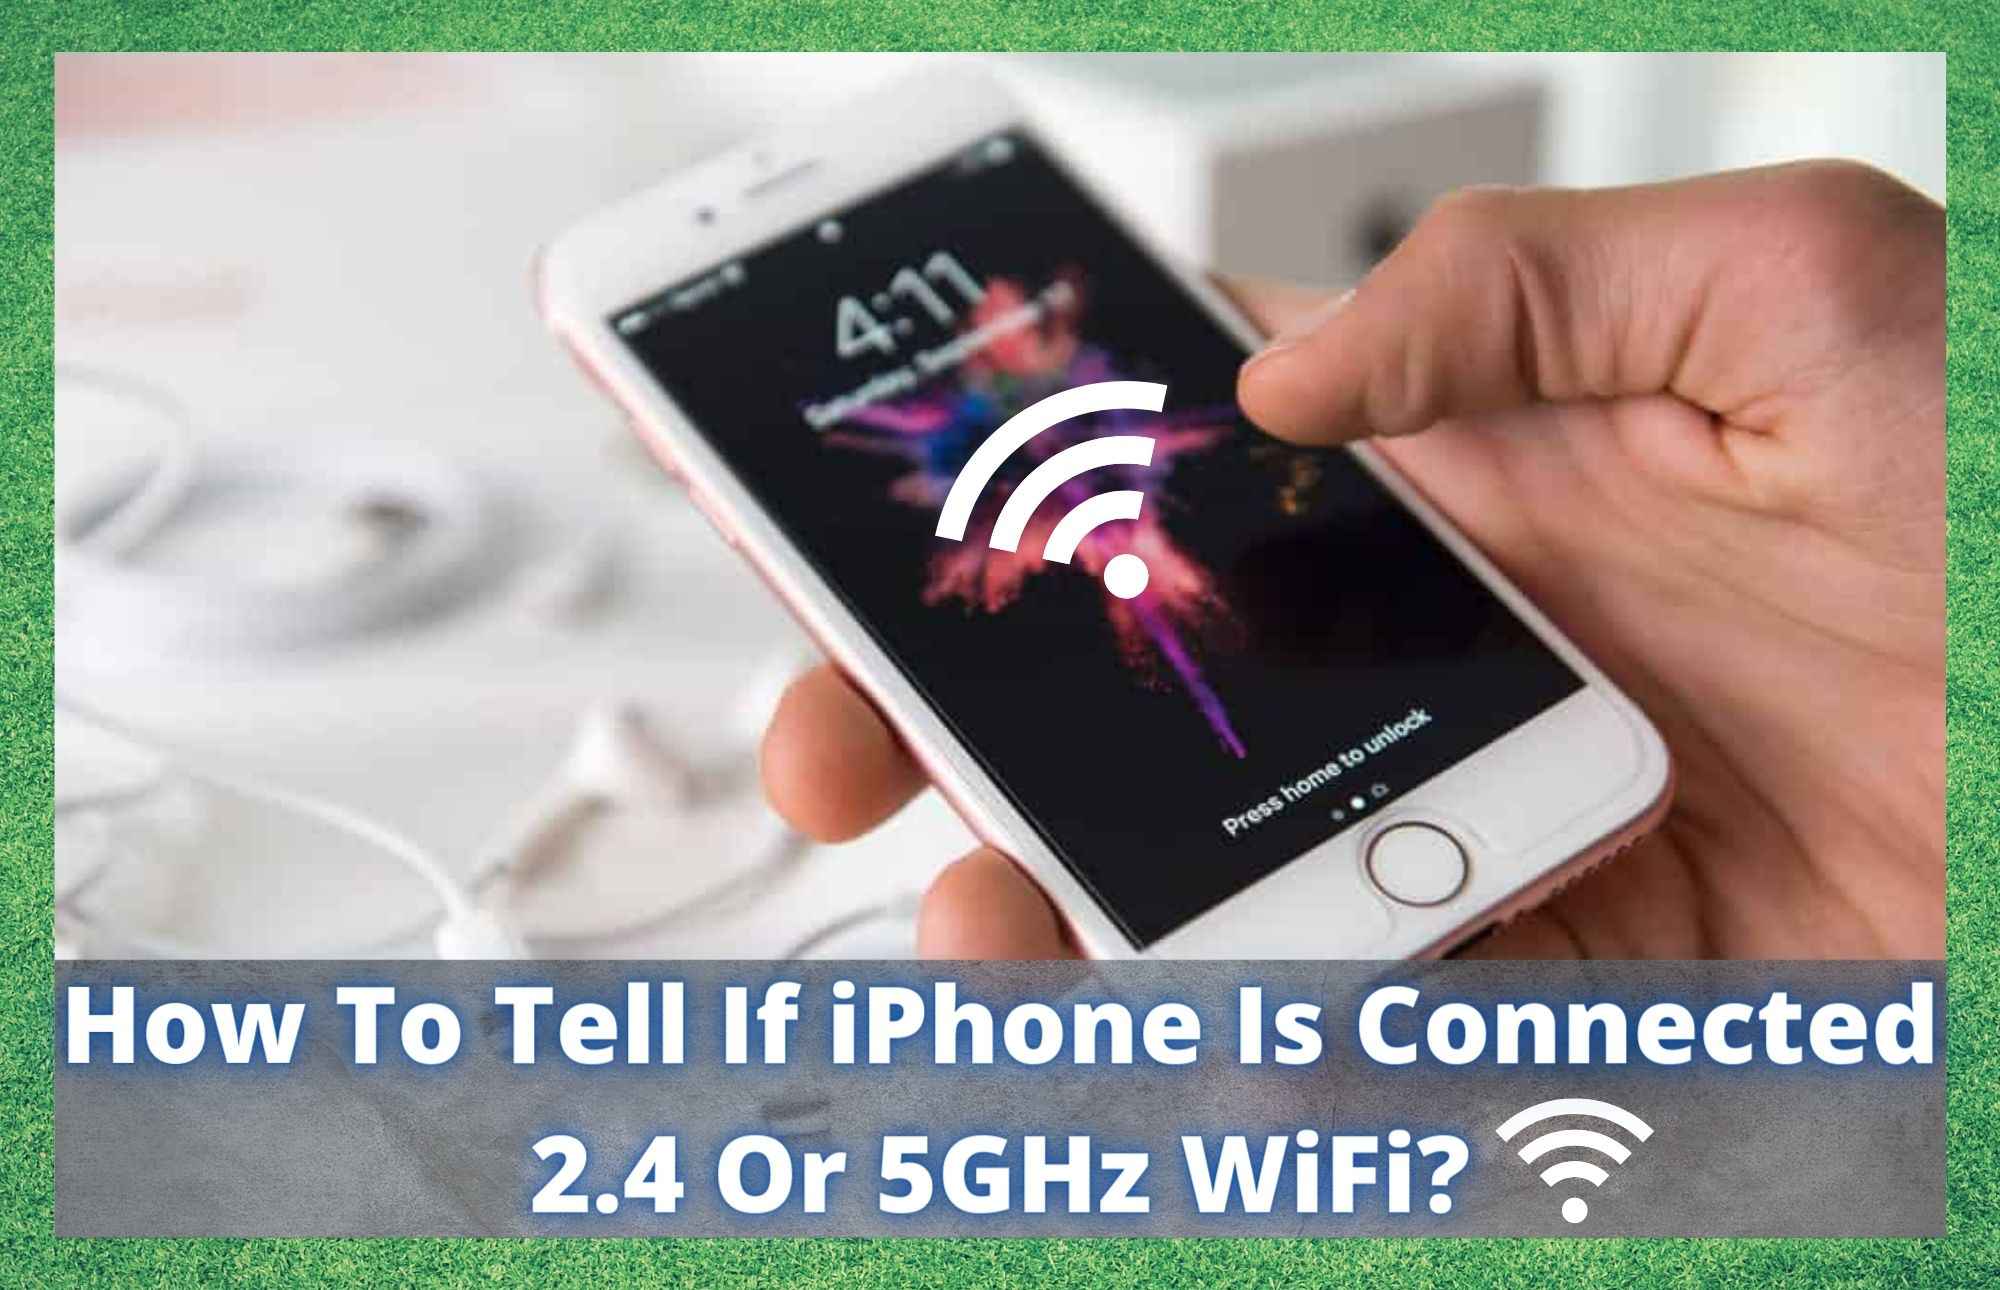 Jak sprawdzić, czy iPhone jest połączony z WiFi 2,4 czy 5 GHz?